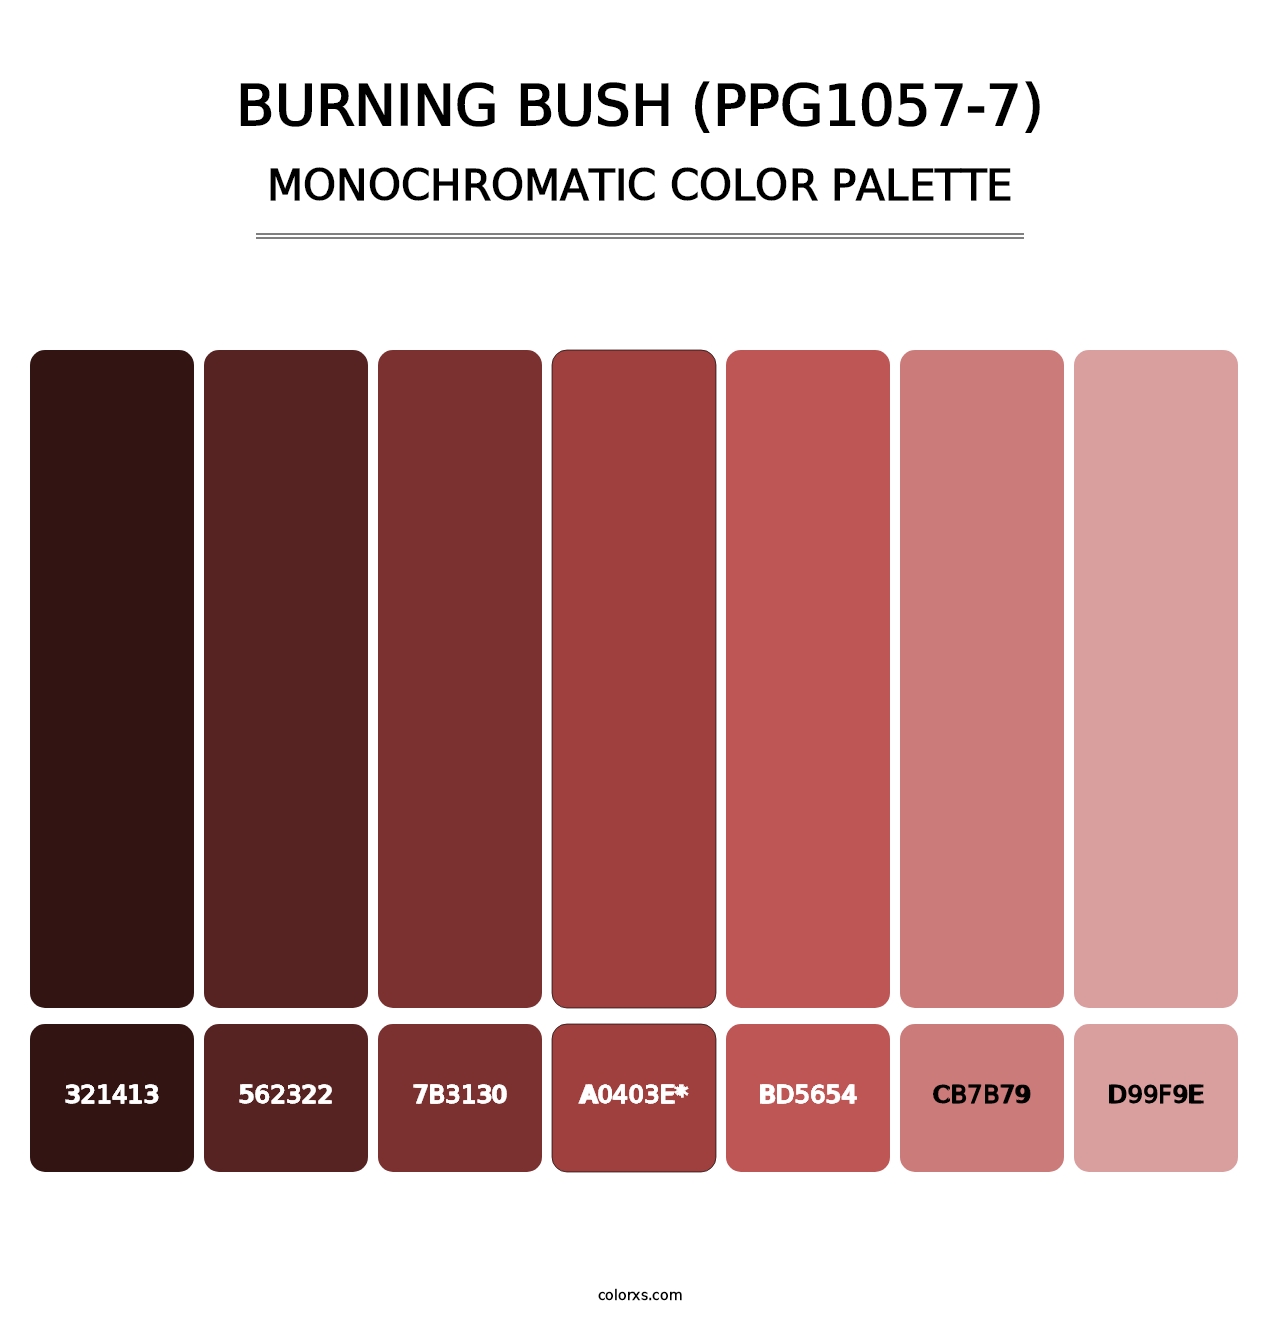 Burning Bush (PPG1057-7) - Monochromatic Color Palette